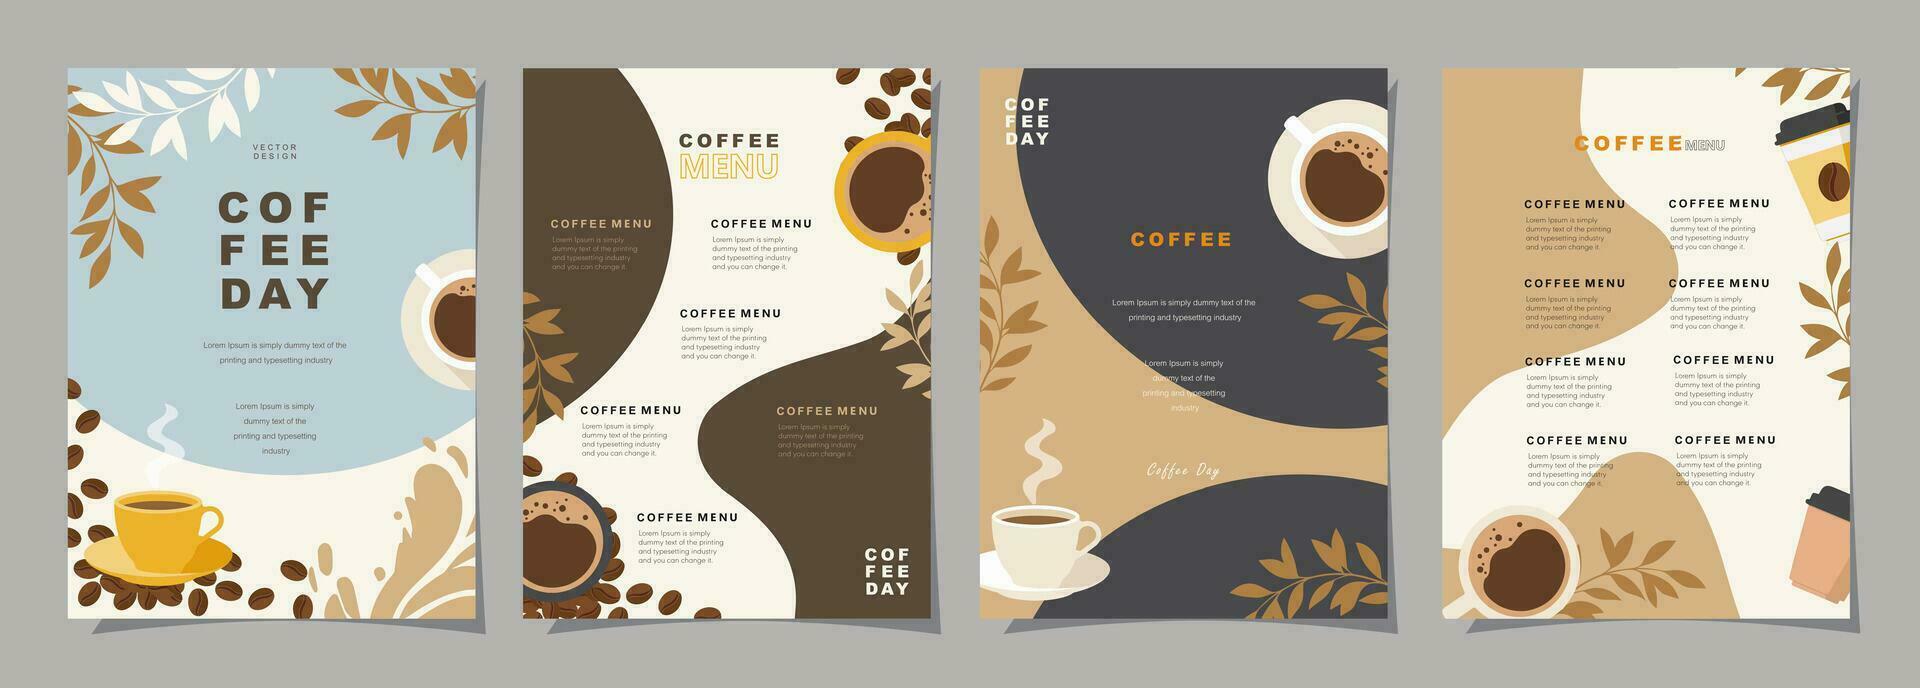 einstellen von skizzieren Banner mit Kaffee Bohnen und Blätter auf bunt Hintergrund zum Poster, Speisekarte, Cafe oder Ein weiterer Vorlage Design. Kaffee Tag. Vektor Illustration.